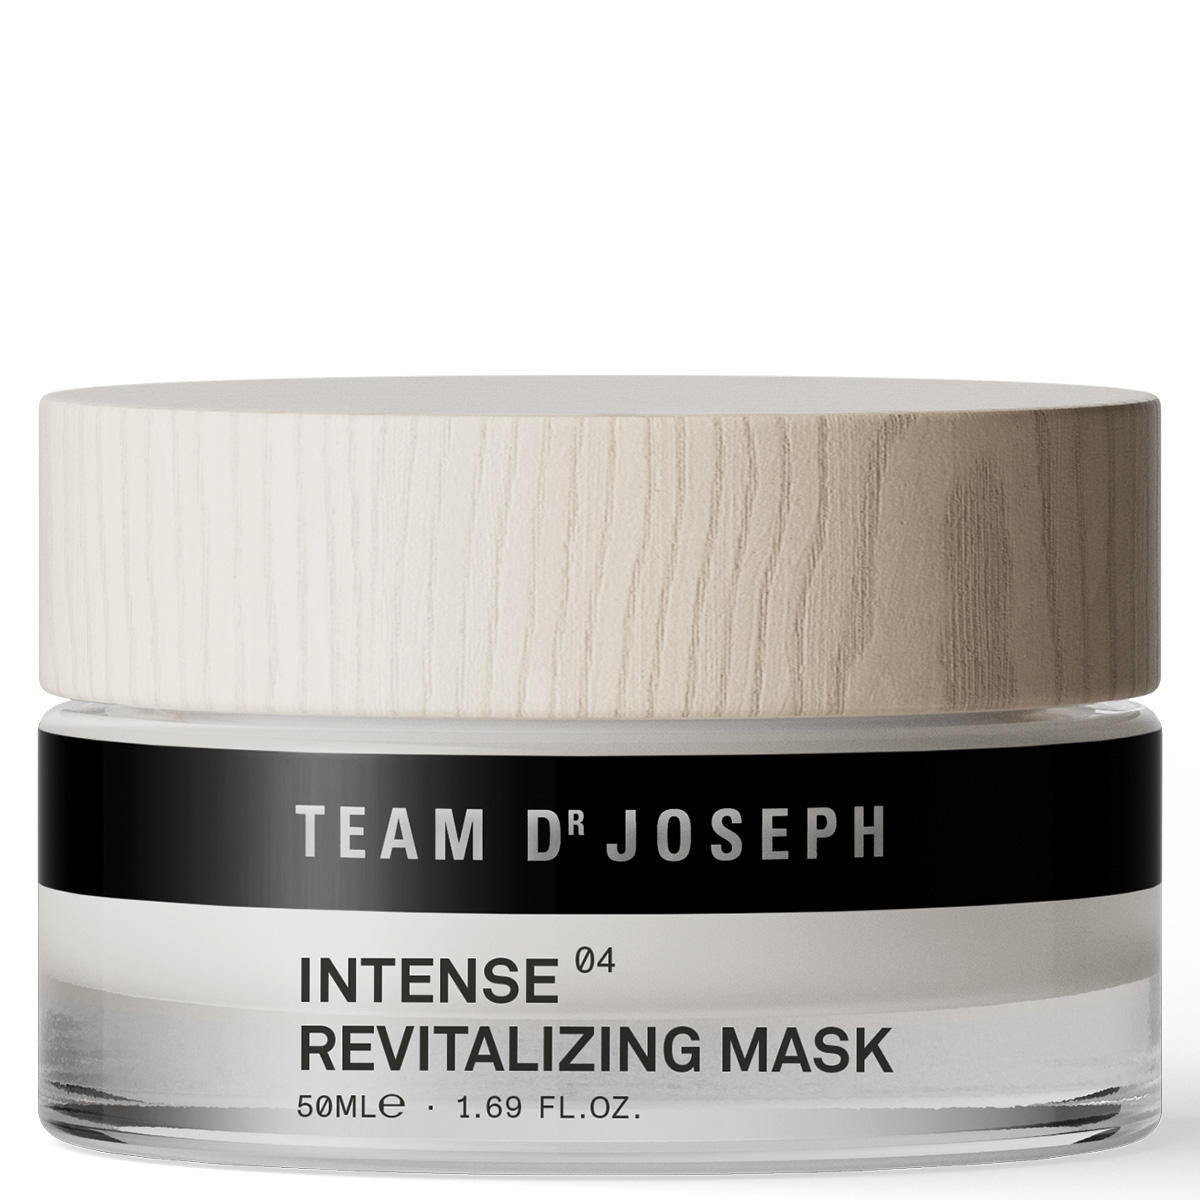 TEAM DR JOSEPH Intense Revitalizing Mask 50 ml - 1